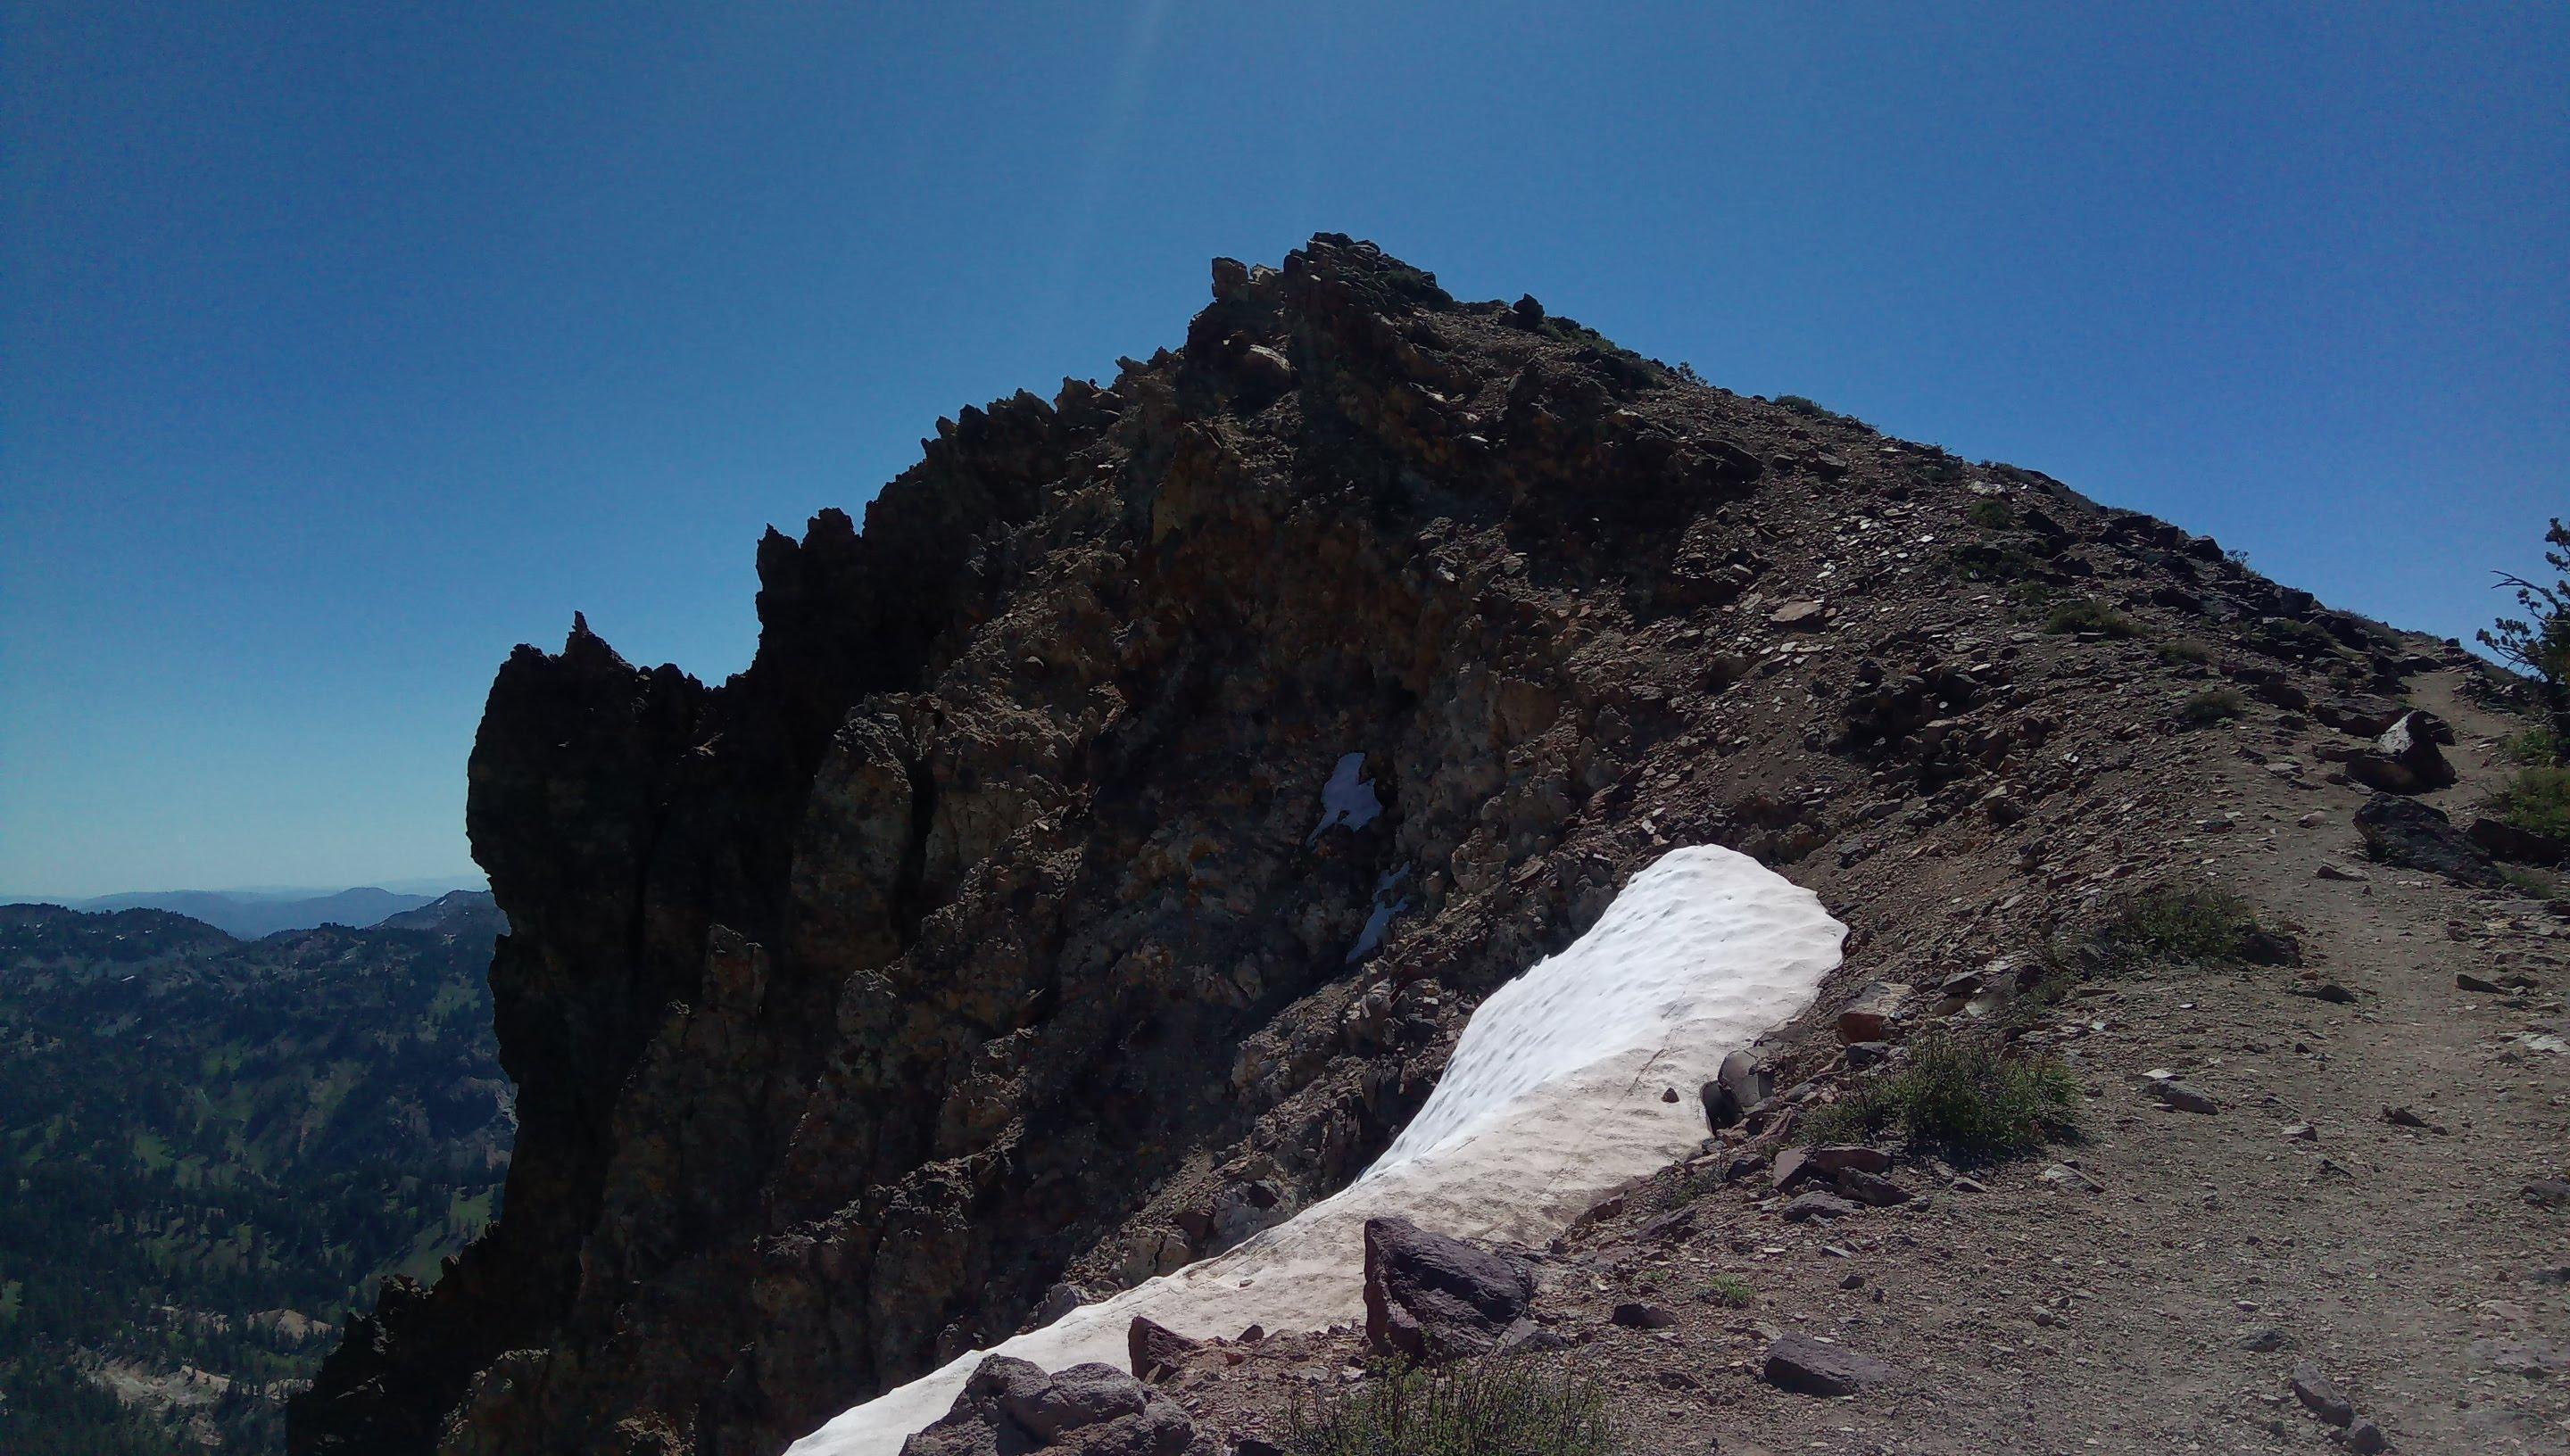 The summit of Brokeoff mountain